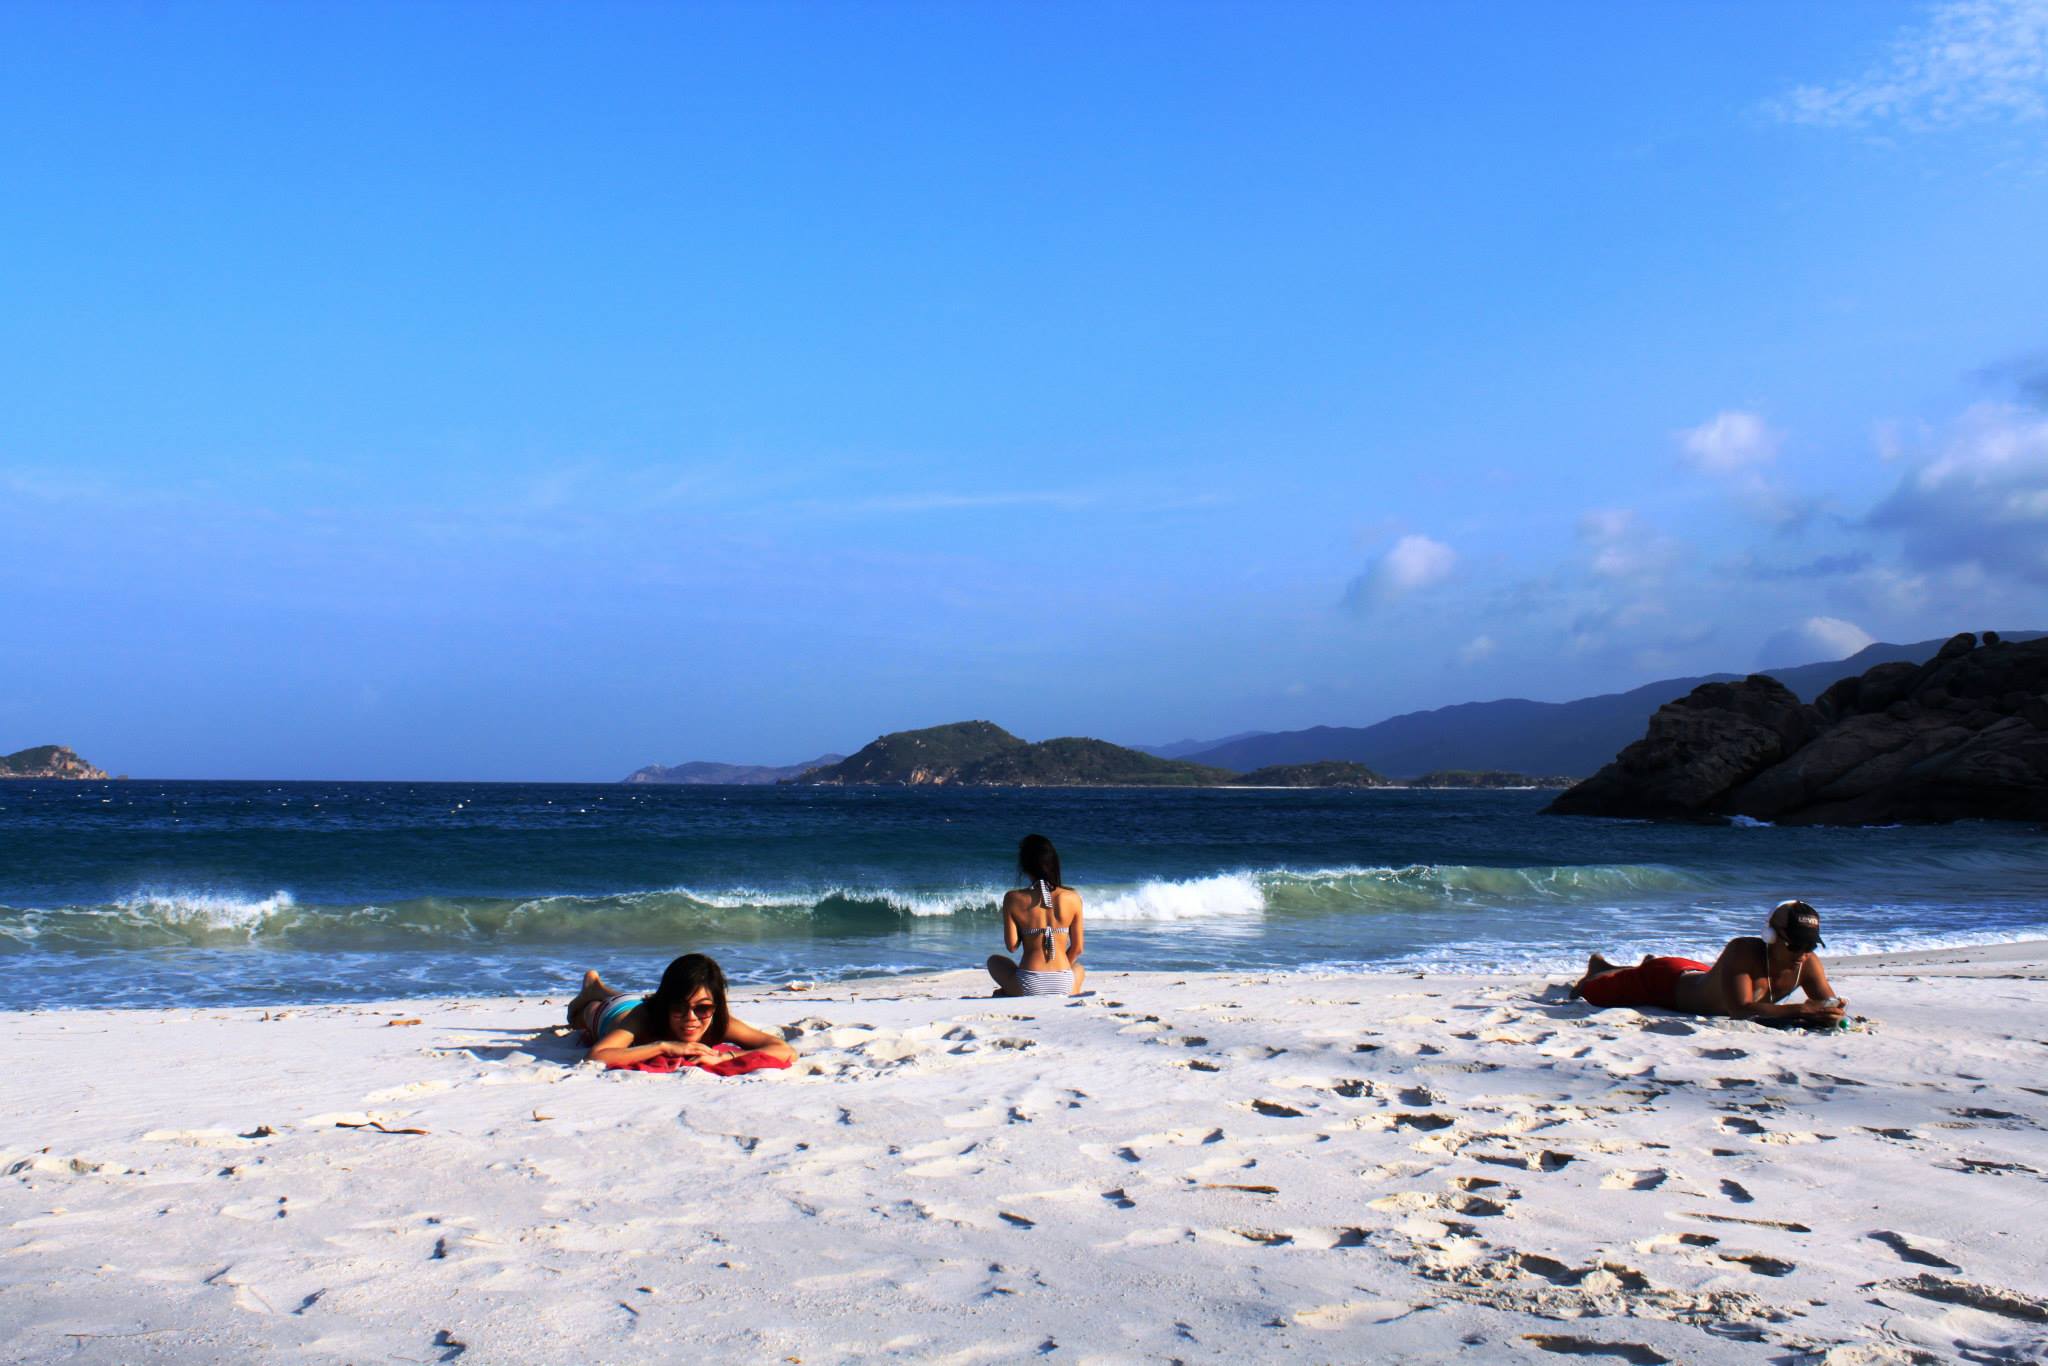 Bờ cát trắng ở đảo Bình Ba là địa điểm lí tưởng để du khách tắm nắng và thư giãn.